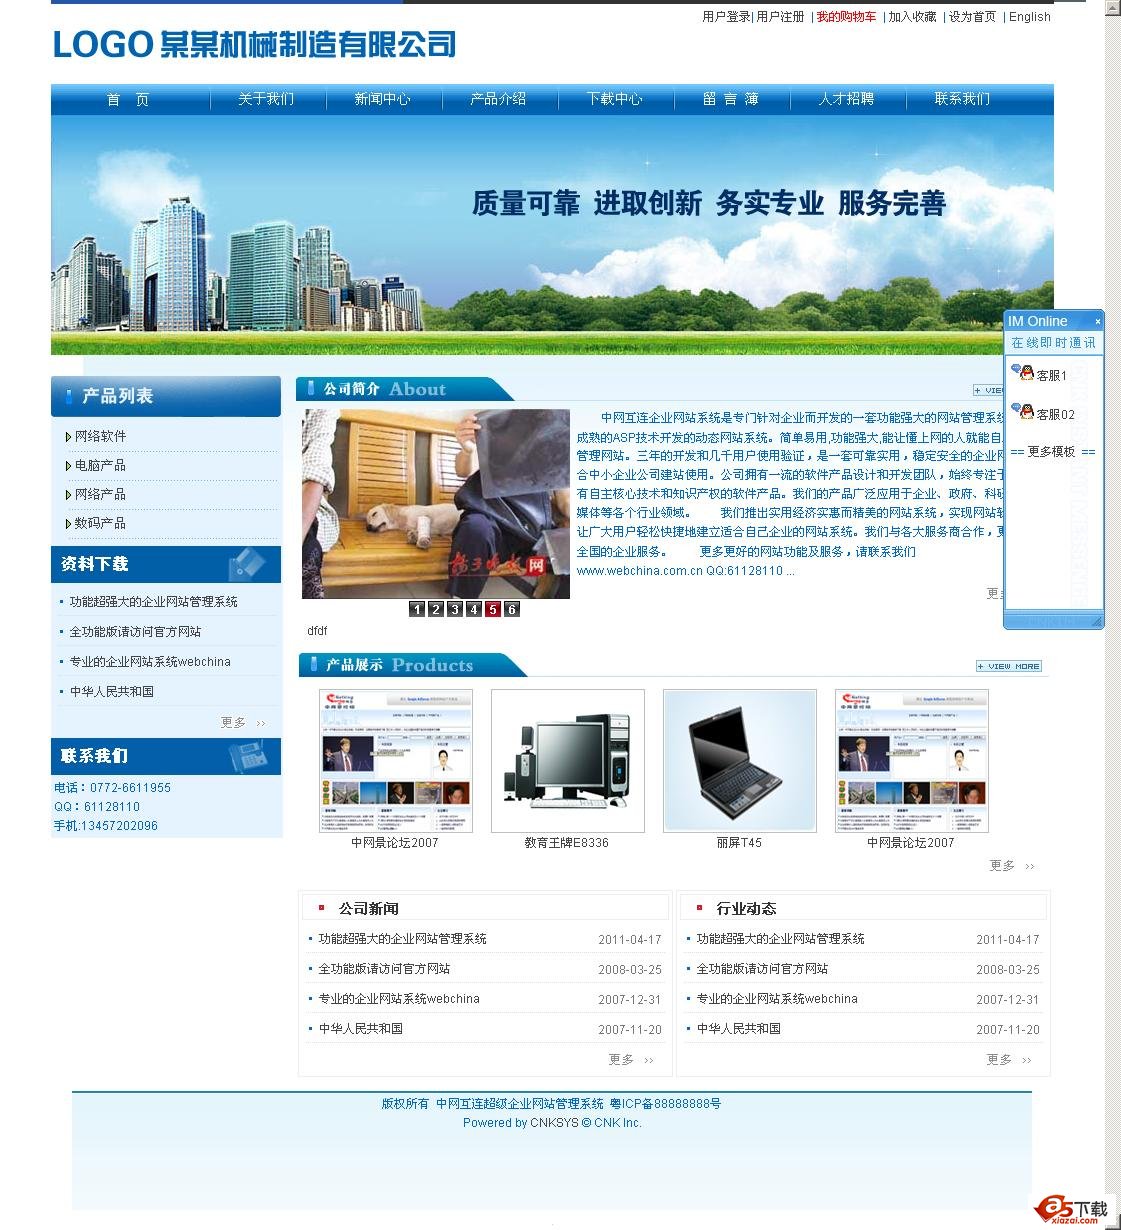 中网双语企业网站管理系统模板2011v56